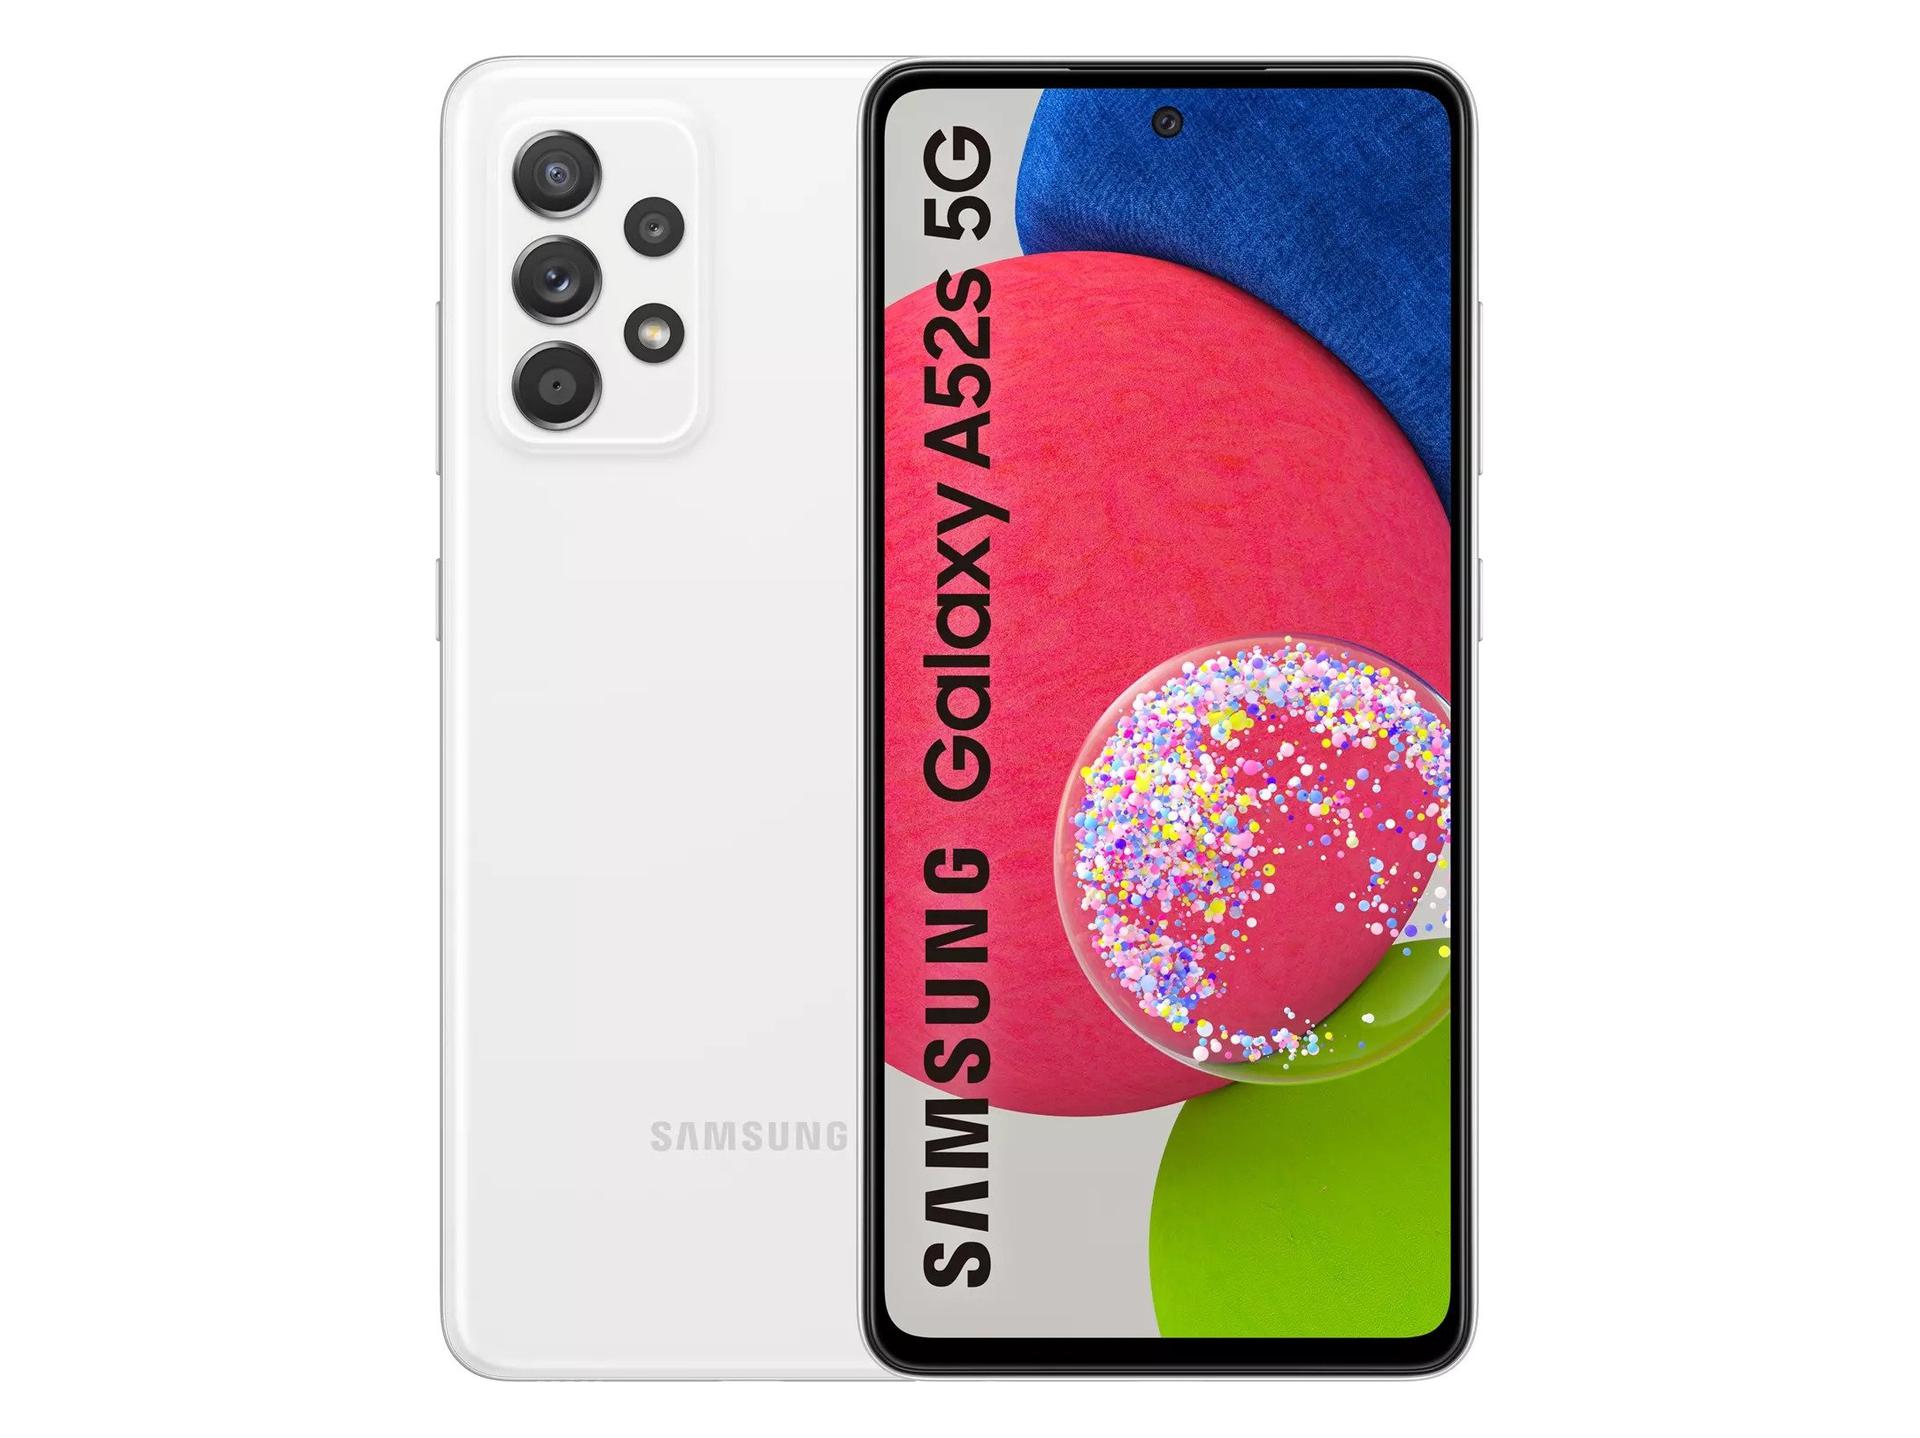 Das Galaxy A52s 5G wurde auf der offiziellen Website von Samsung angekündigt